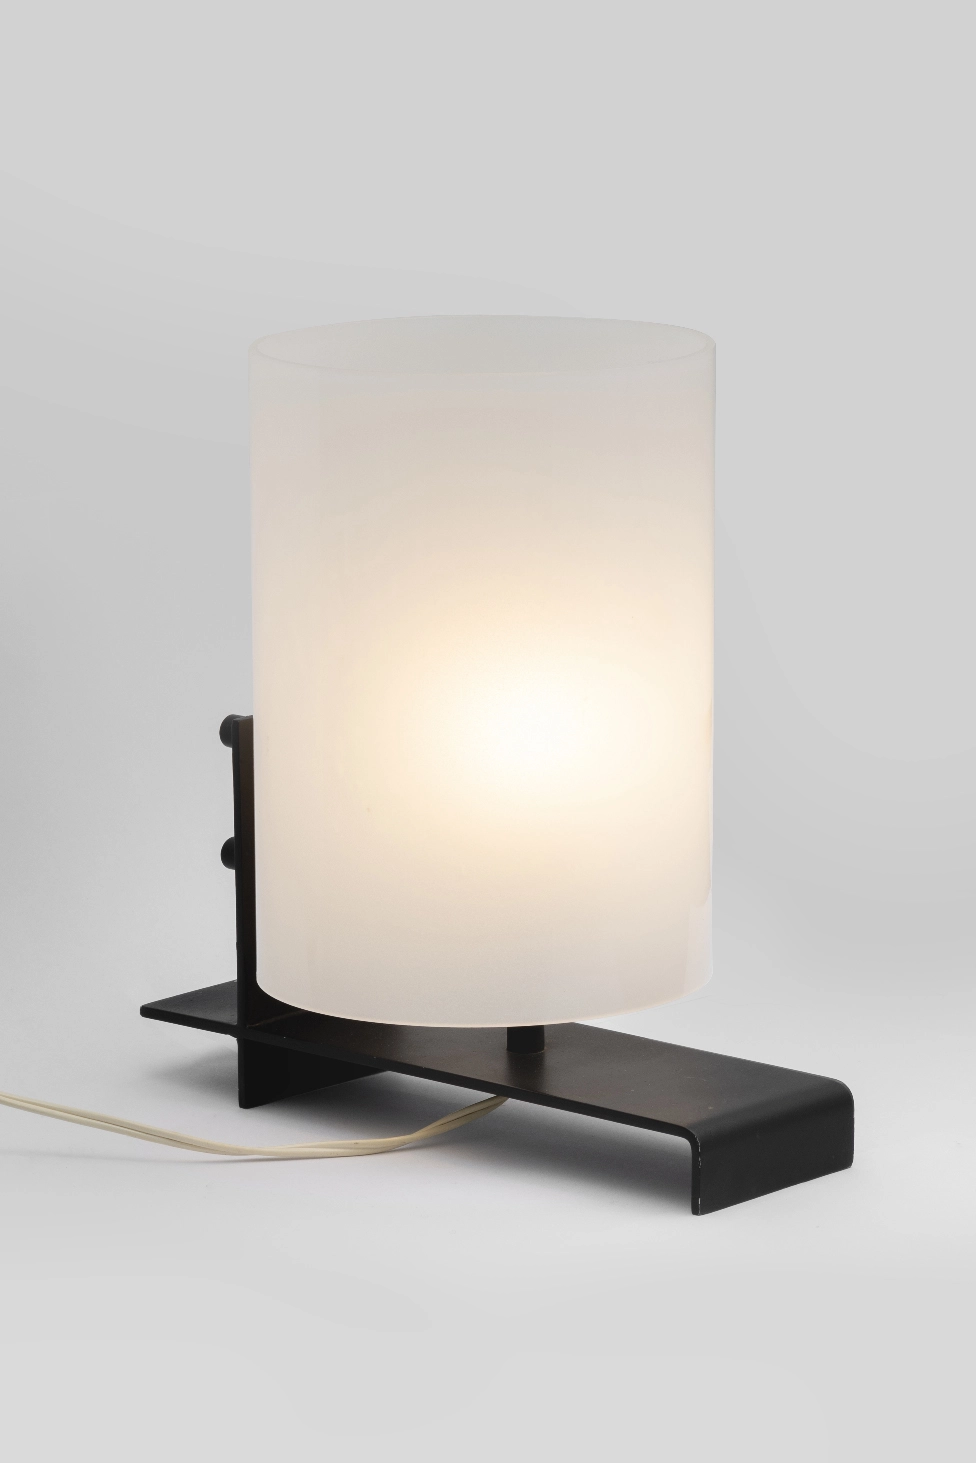 Lampe perspex & metal - Georges Frydman - Table light - Galerie kreo